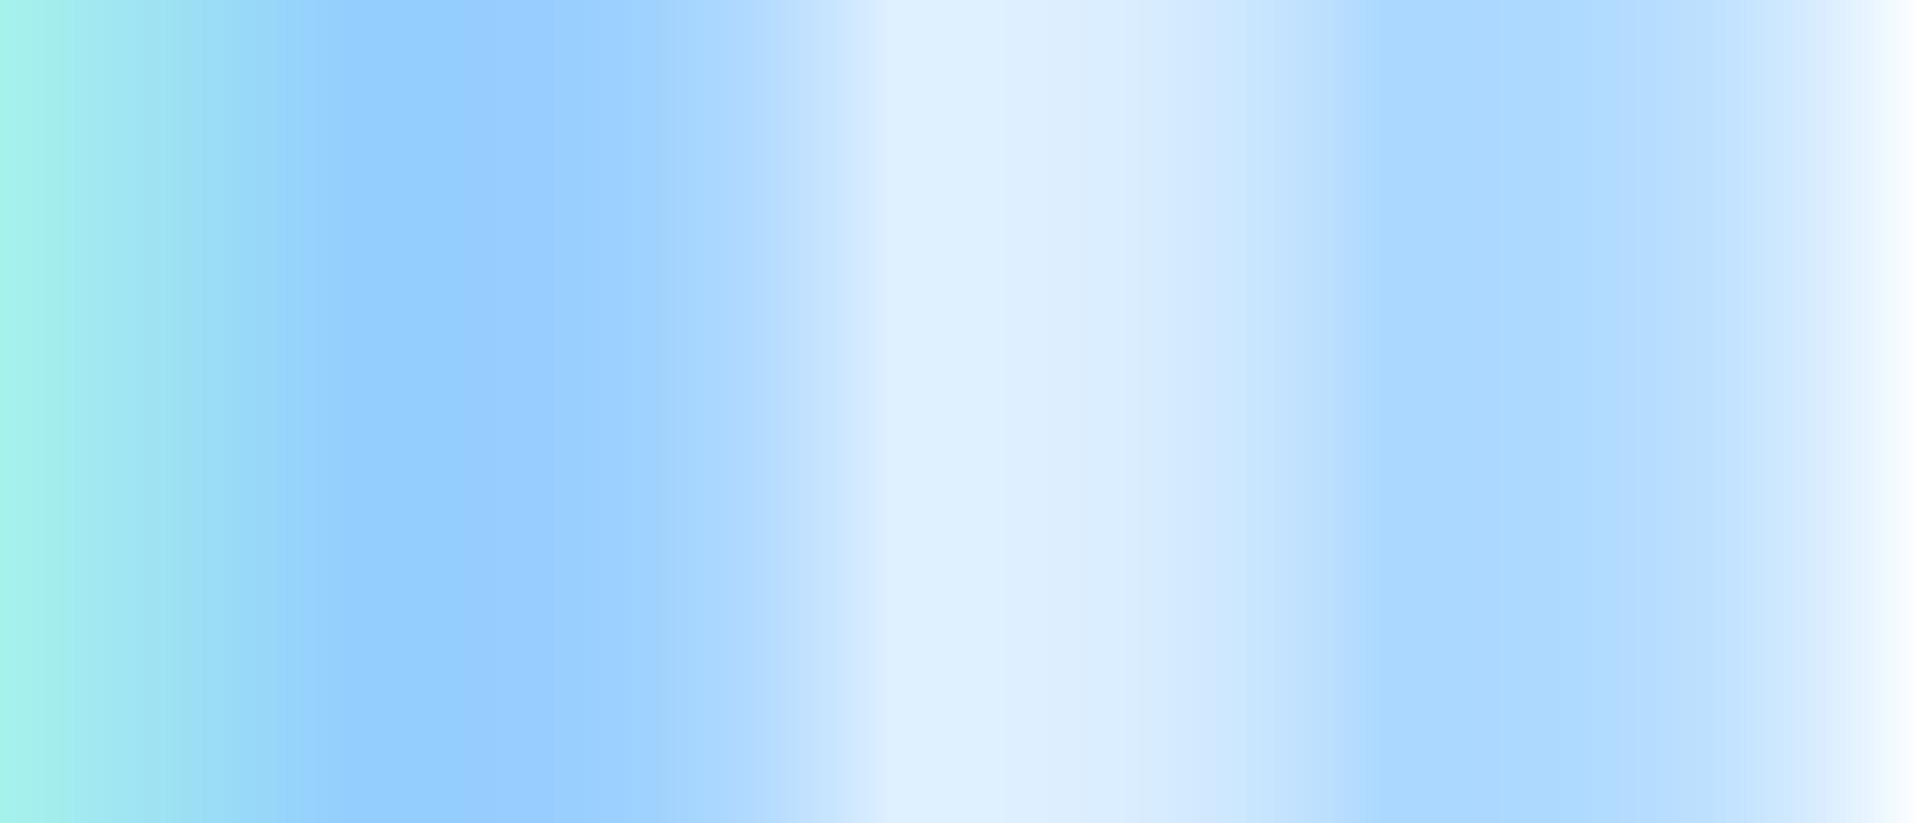 blauer Farbverlauf Folienbeschaffenheitshintergrund vektor